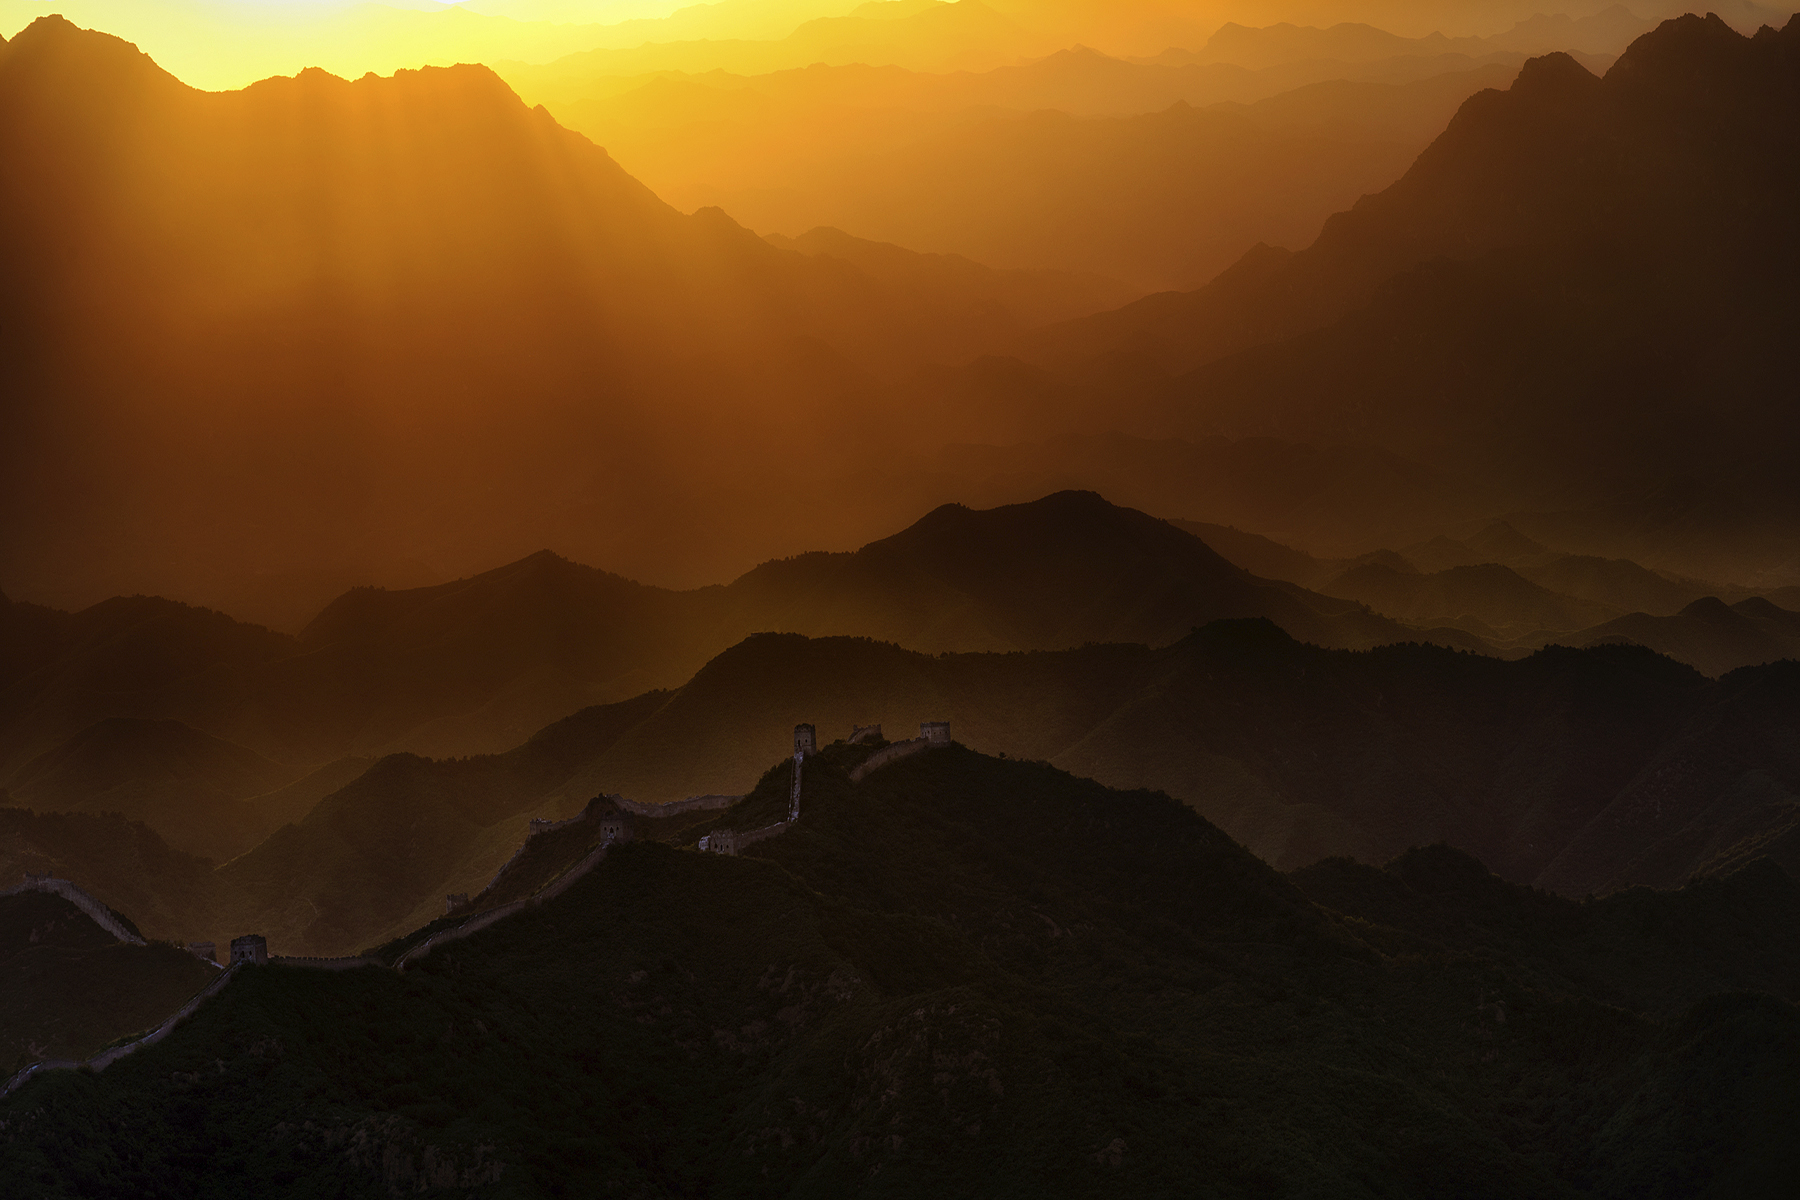 McLennan_Great Wall of China_004.jpg